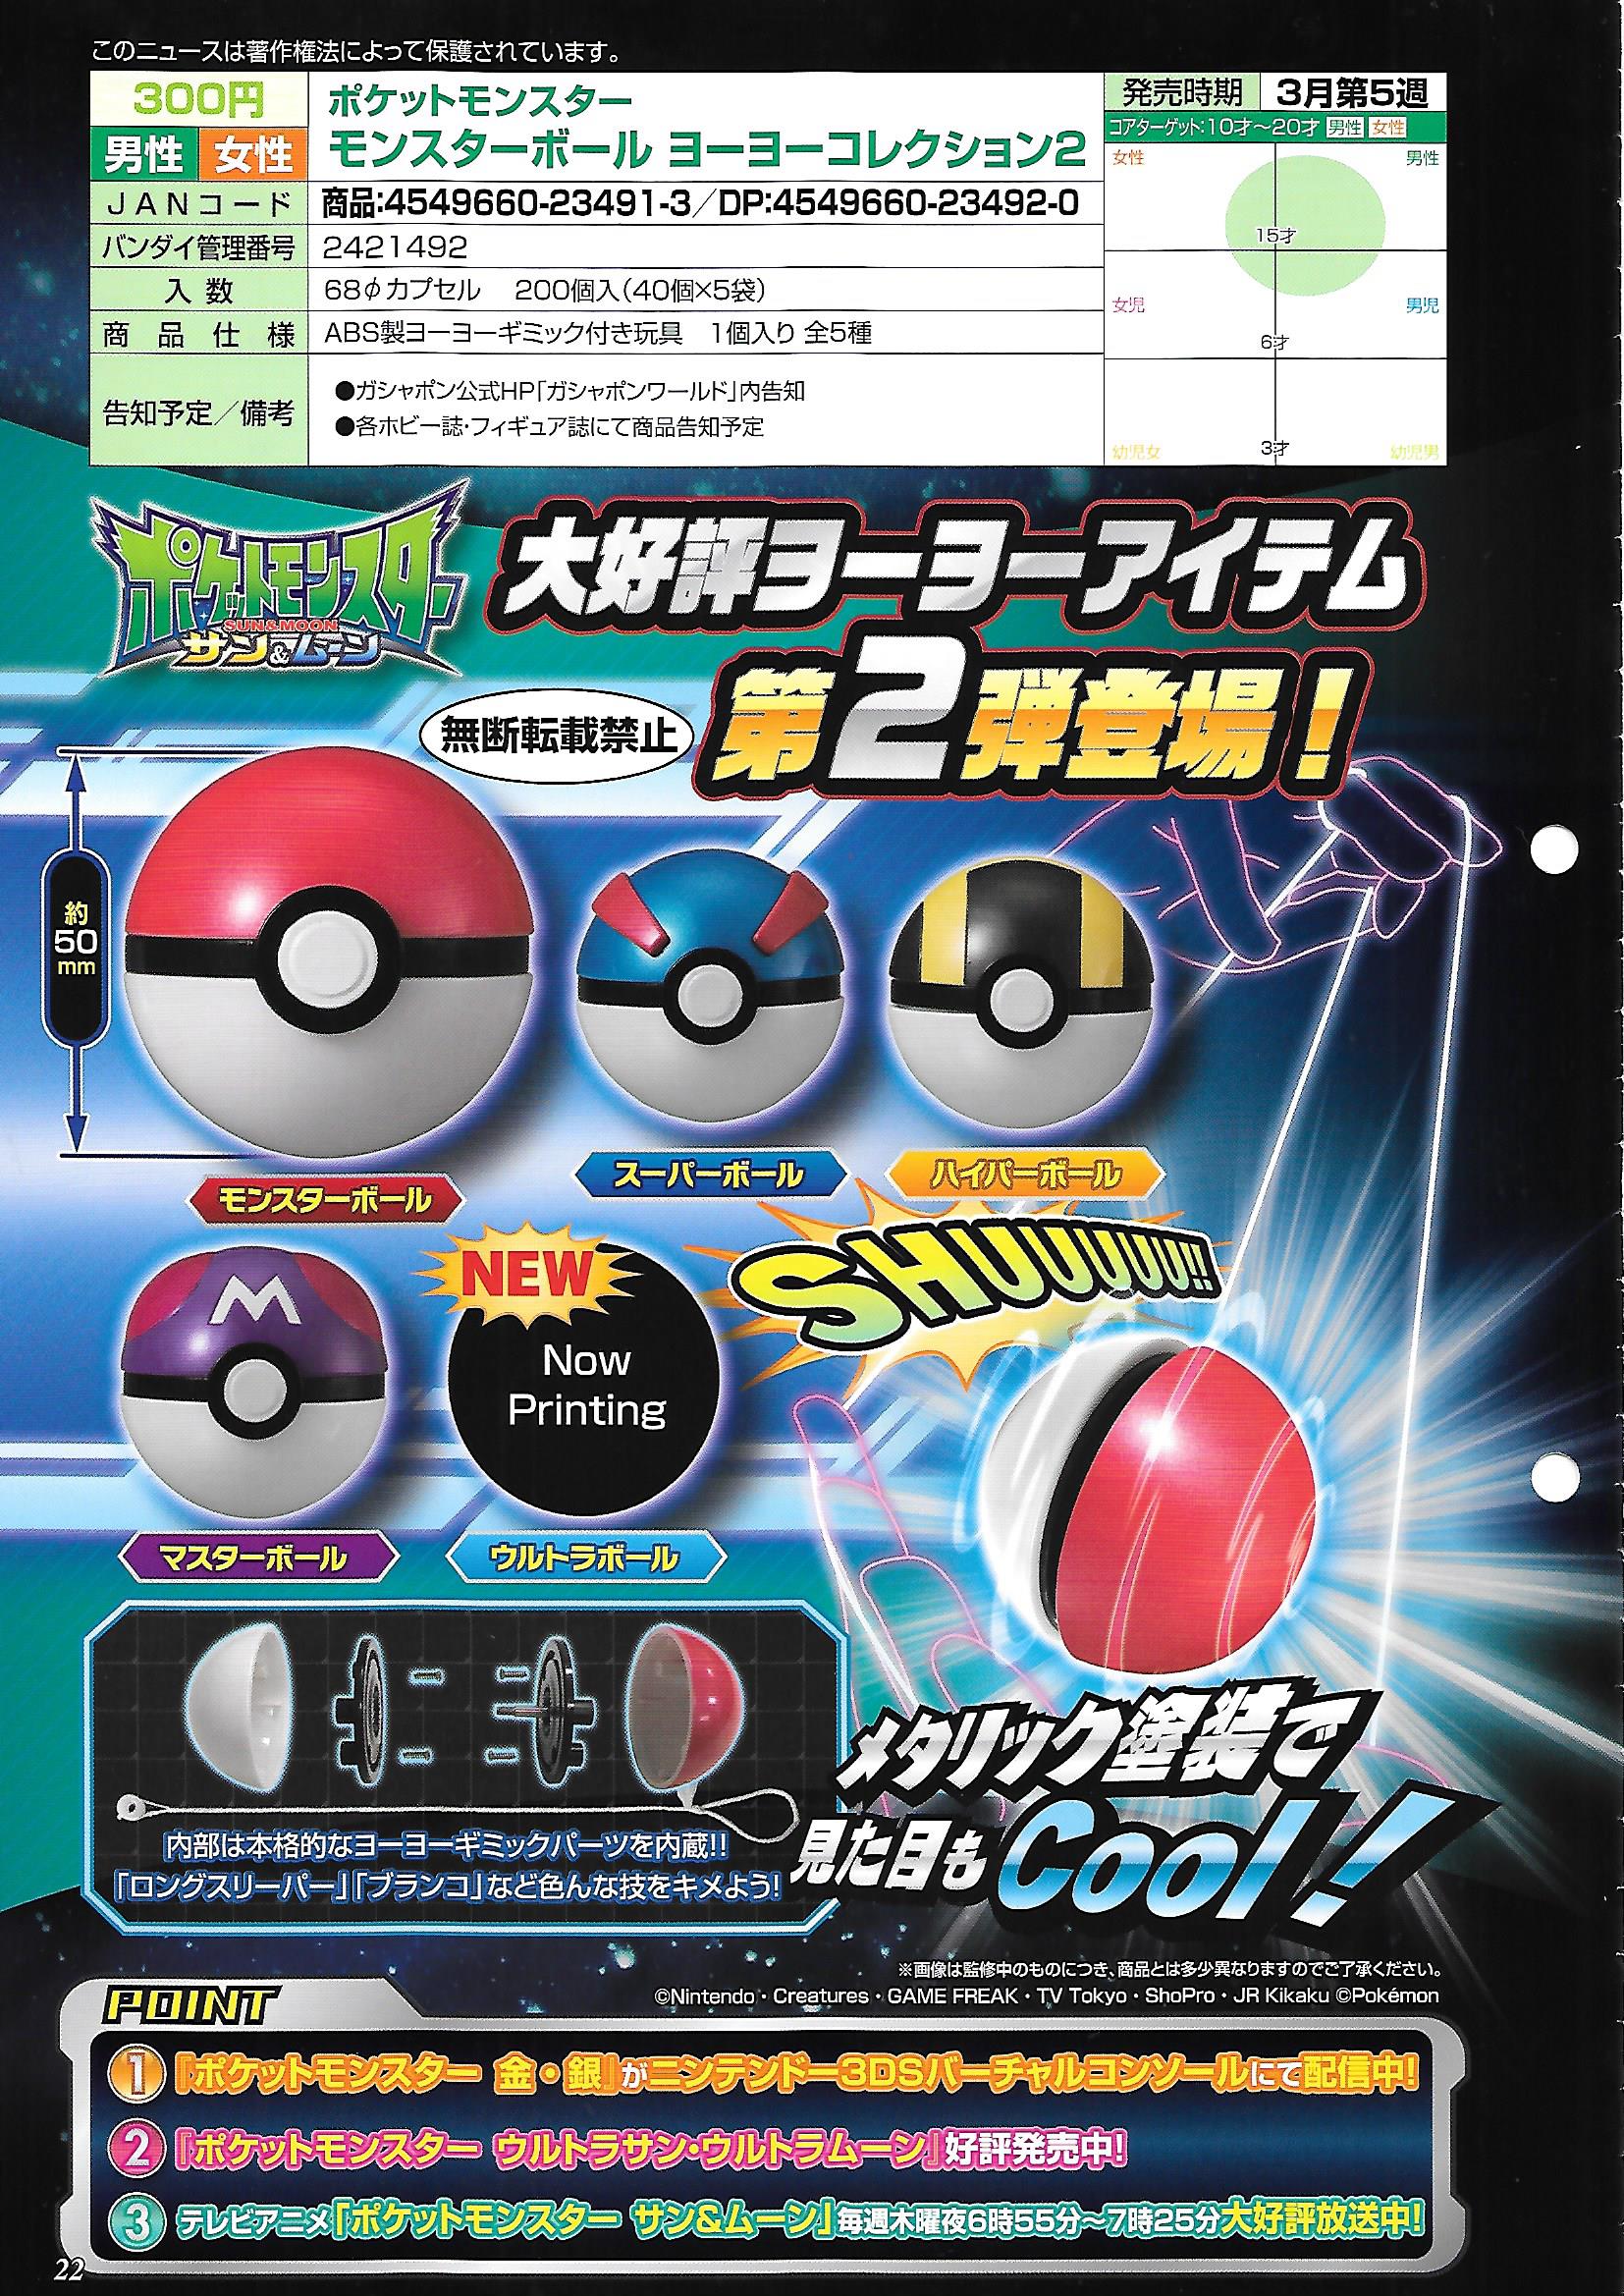 300日元扭蛋 口袋妖怪 精灵球型悠悠球 第2弹 全5种 234913